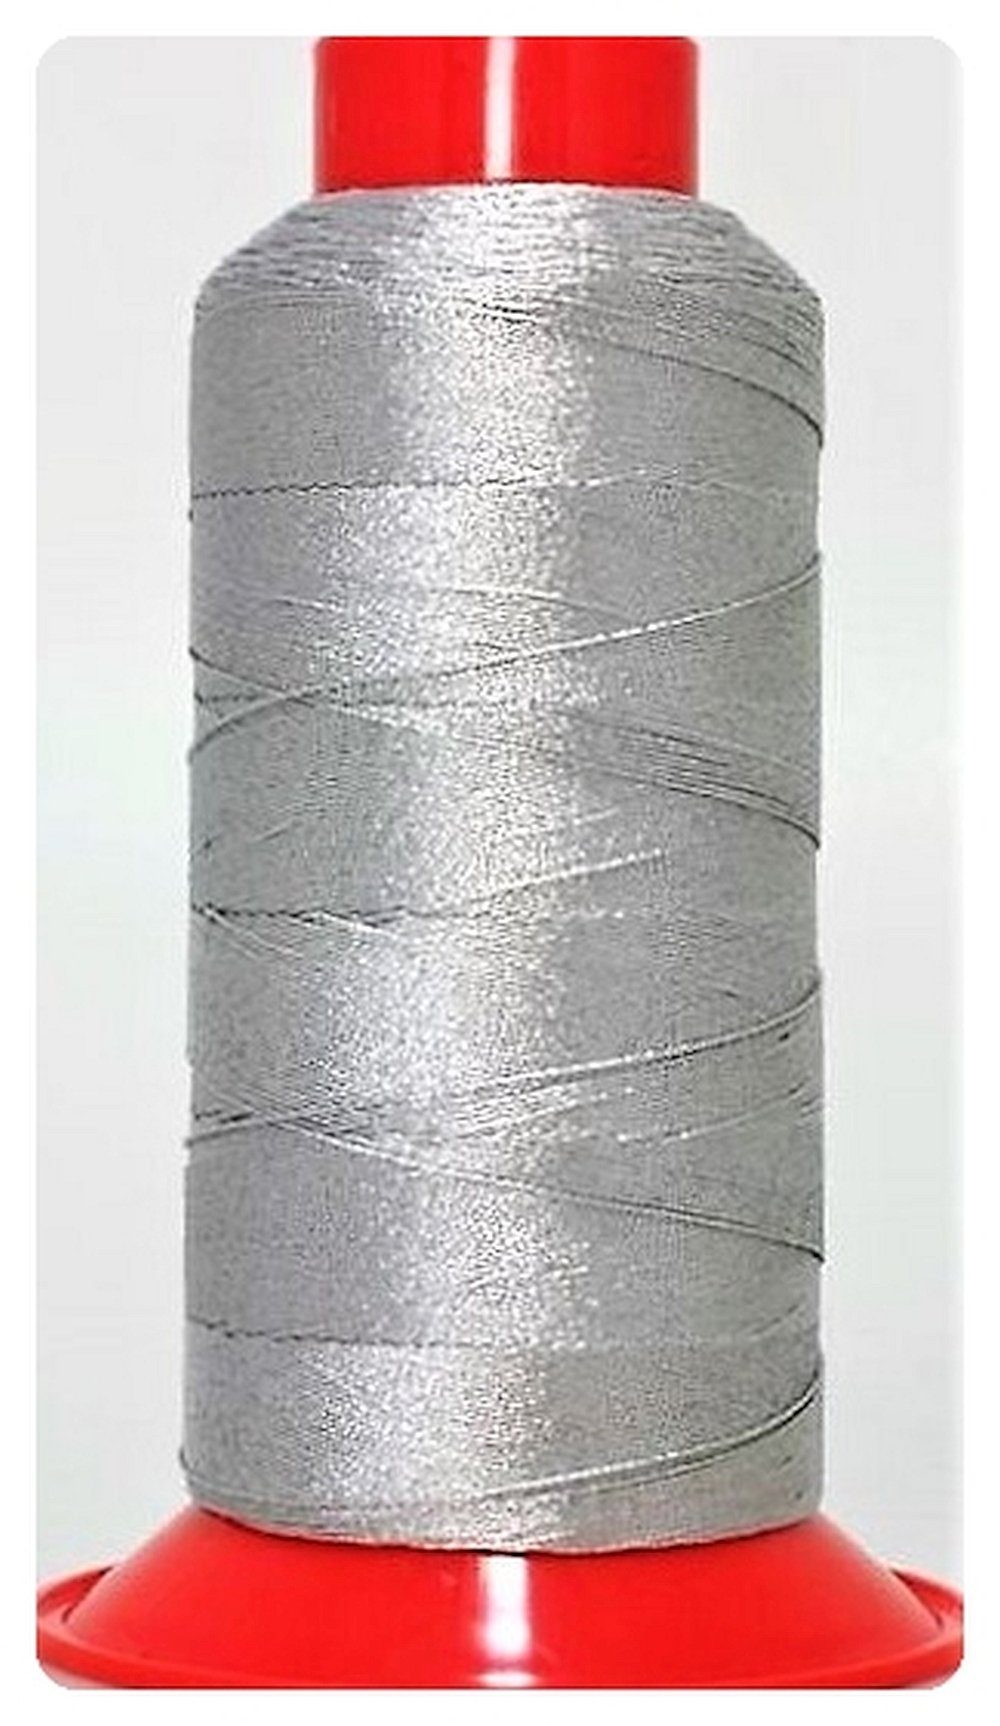 Amann Amann META 30 Overlockgarn Stickgarn metallisiert, silber, 700 m (0,00 Nähgarn, 700 m, für Oberbekleidung, Sportswear, Outdoor, Wäsche, Leder